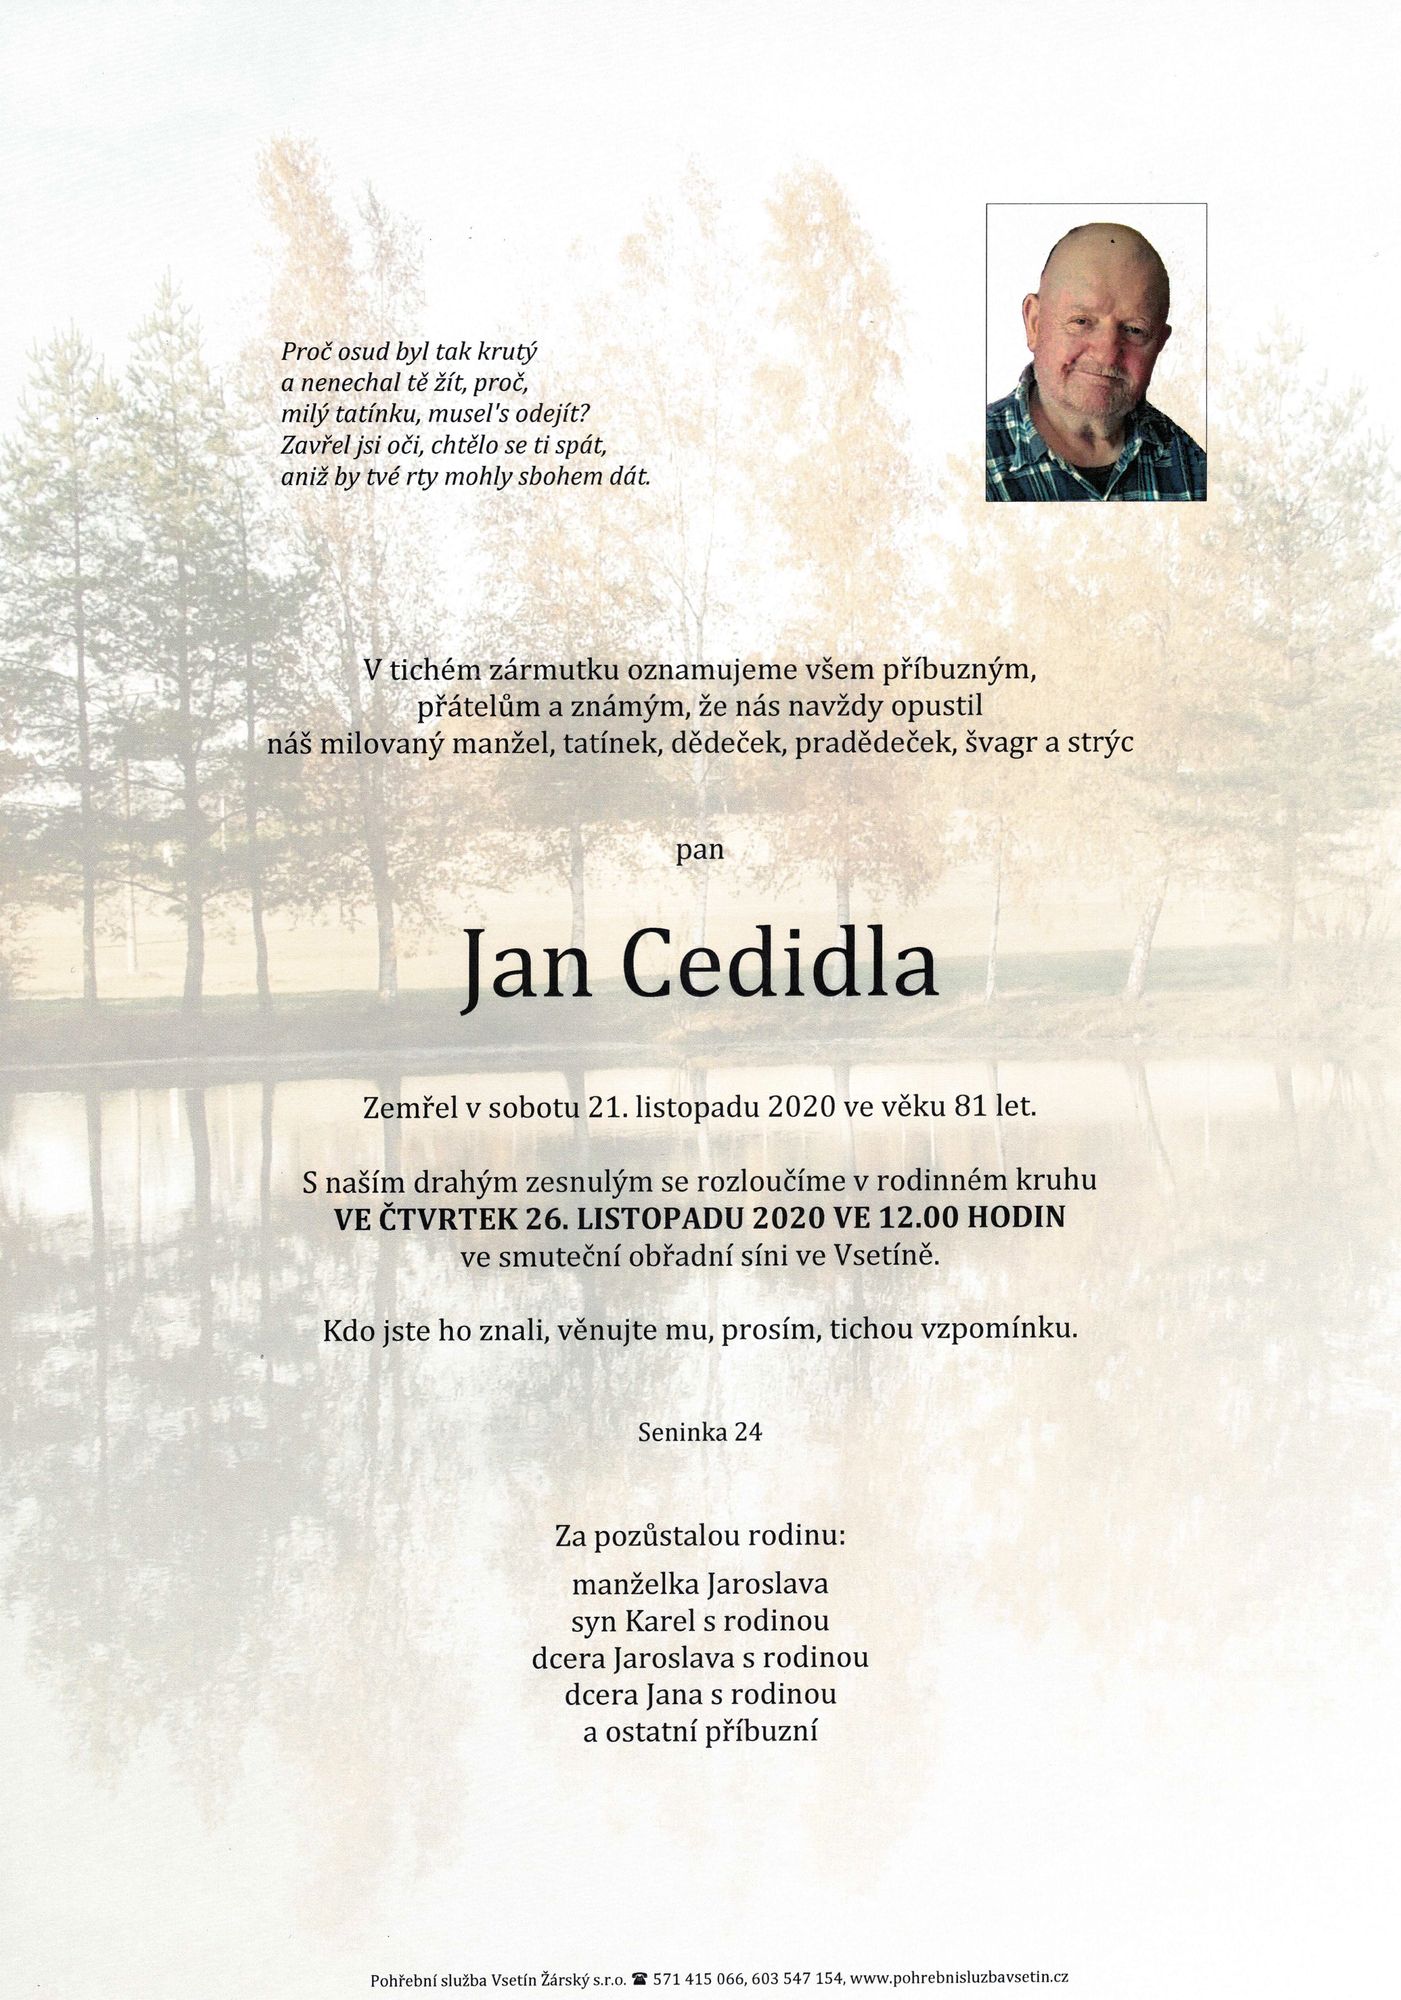 Jan Cedidla